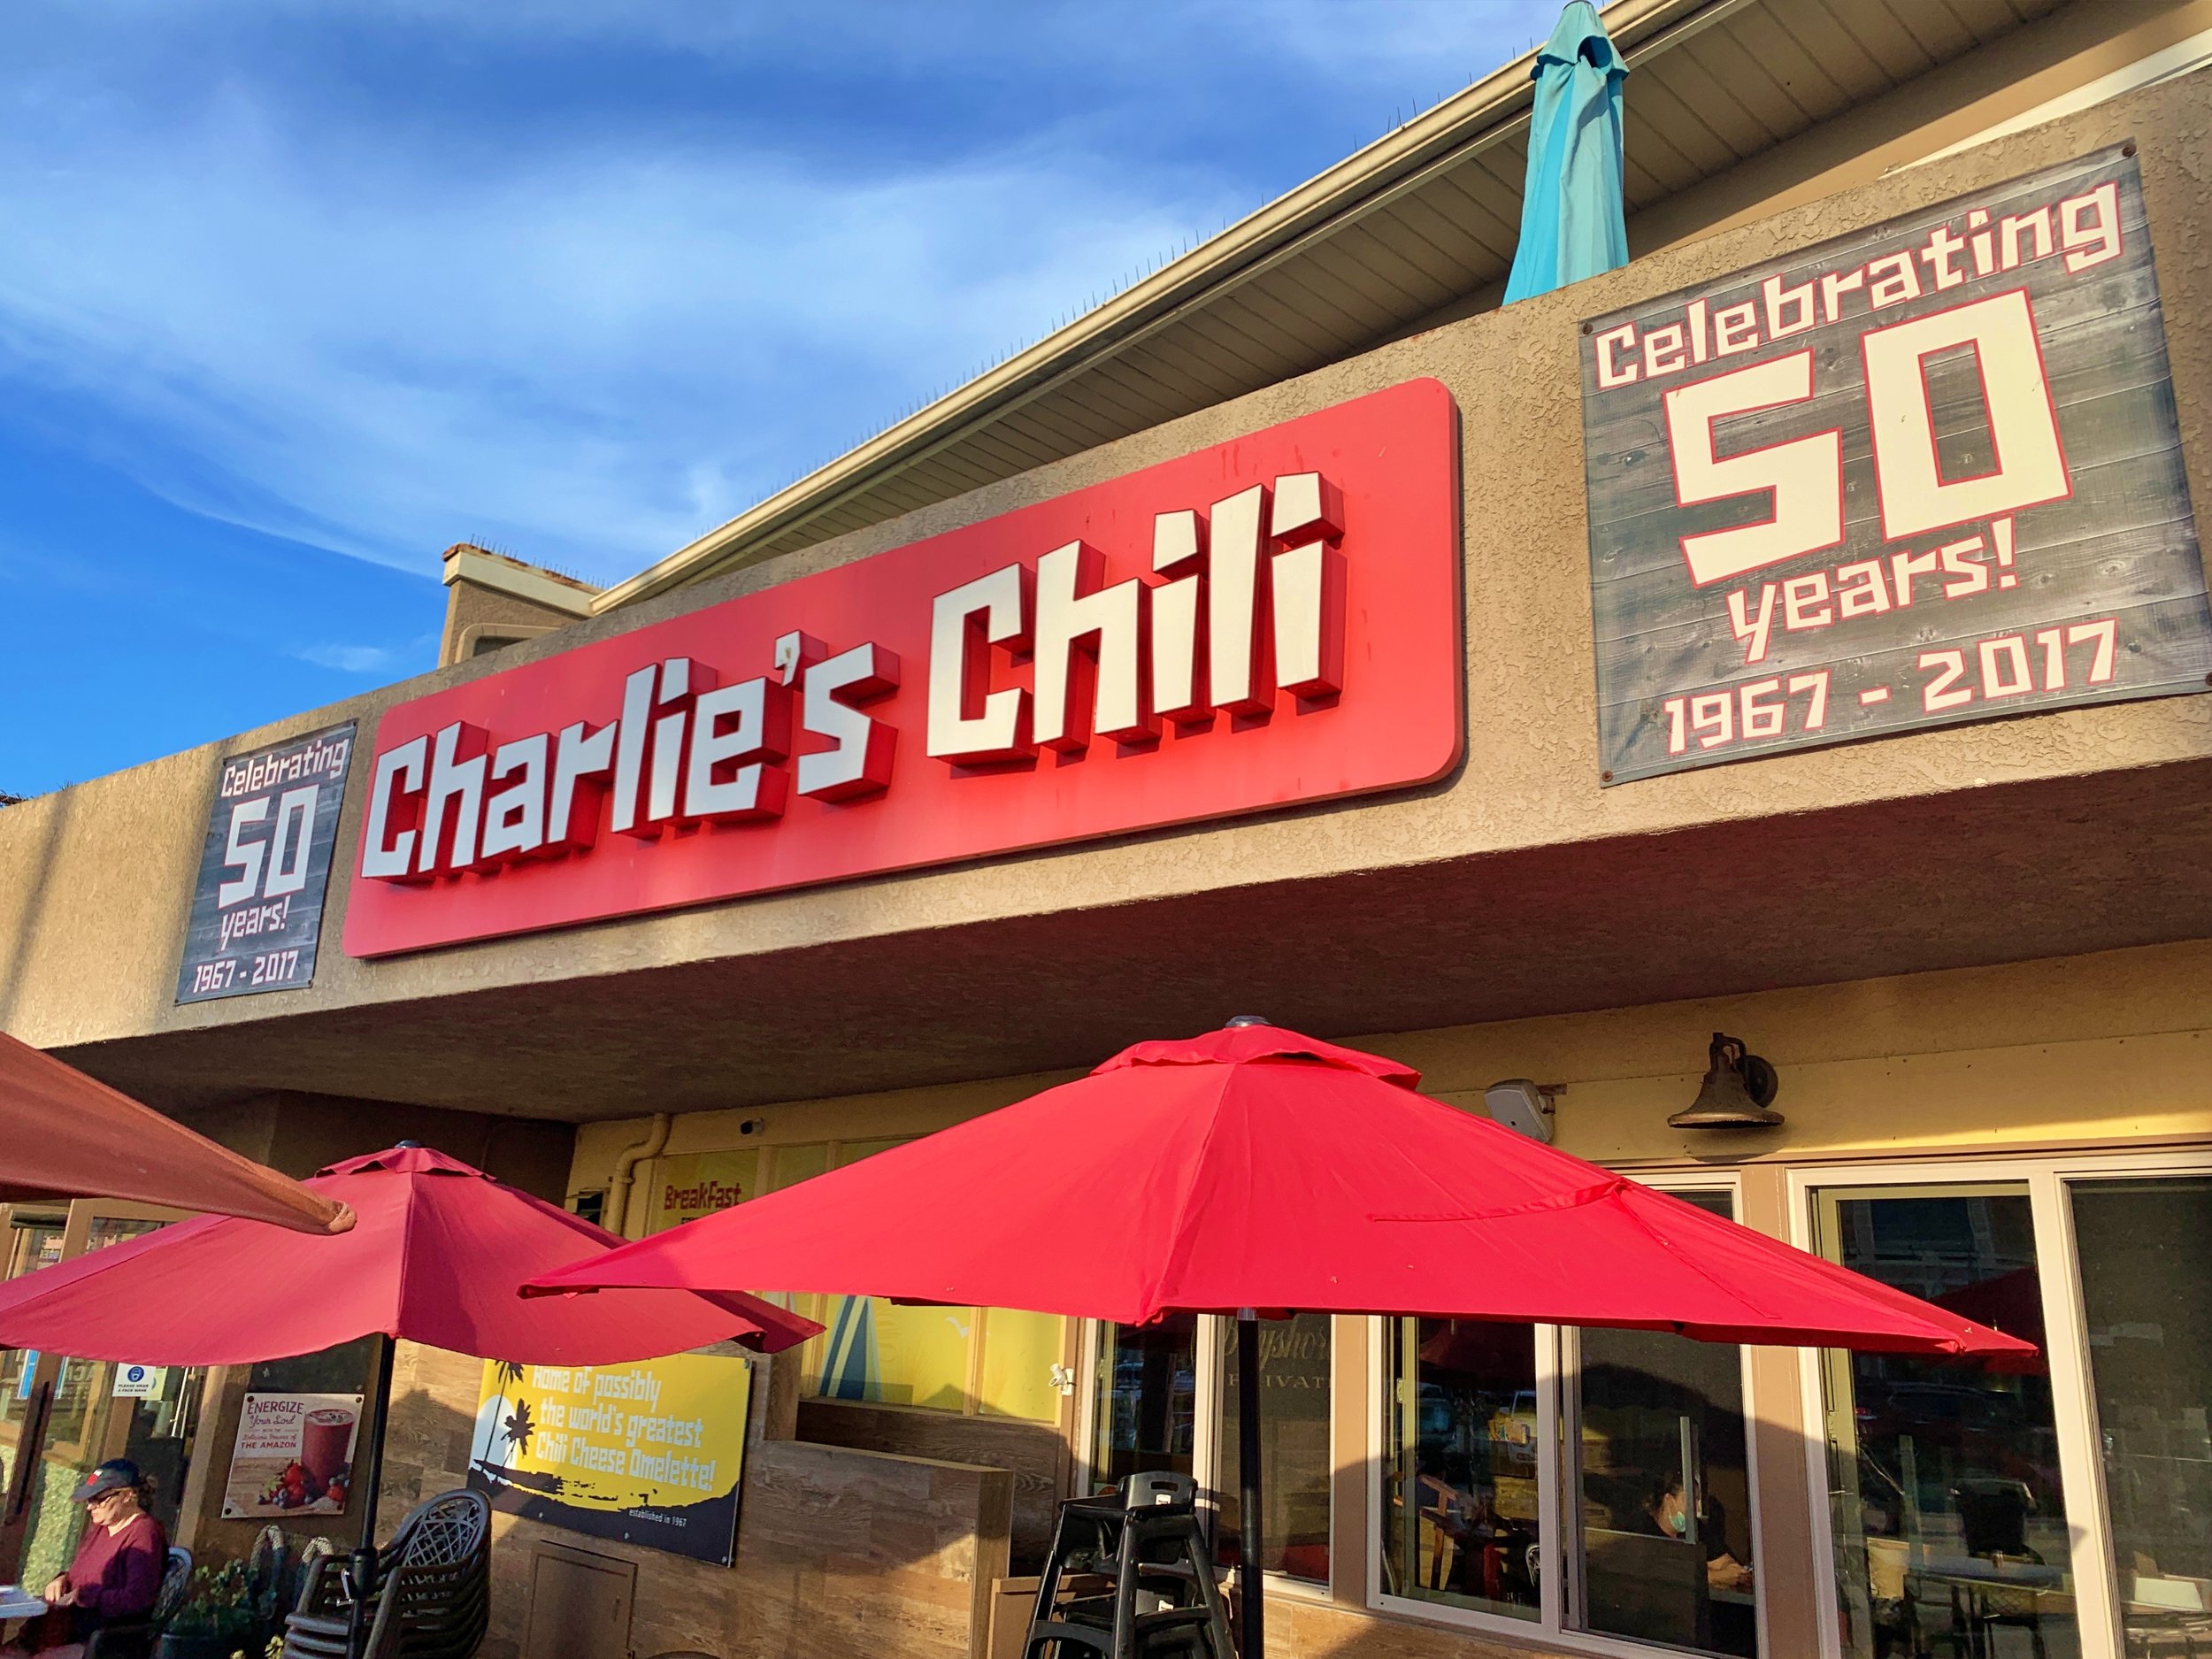 Charlie's Chili